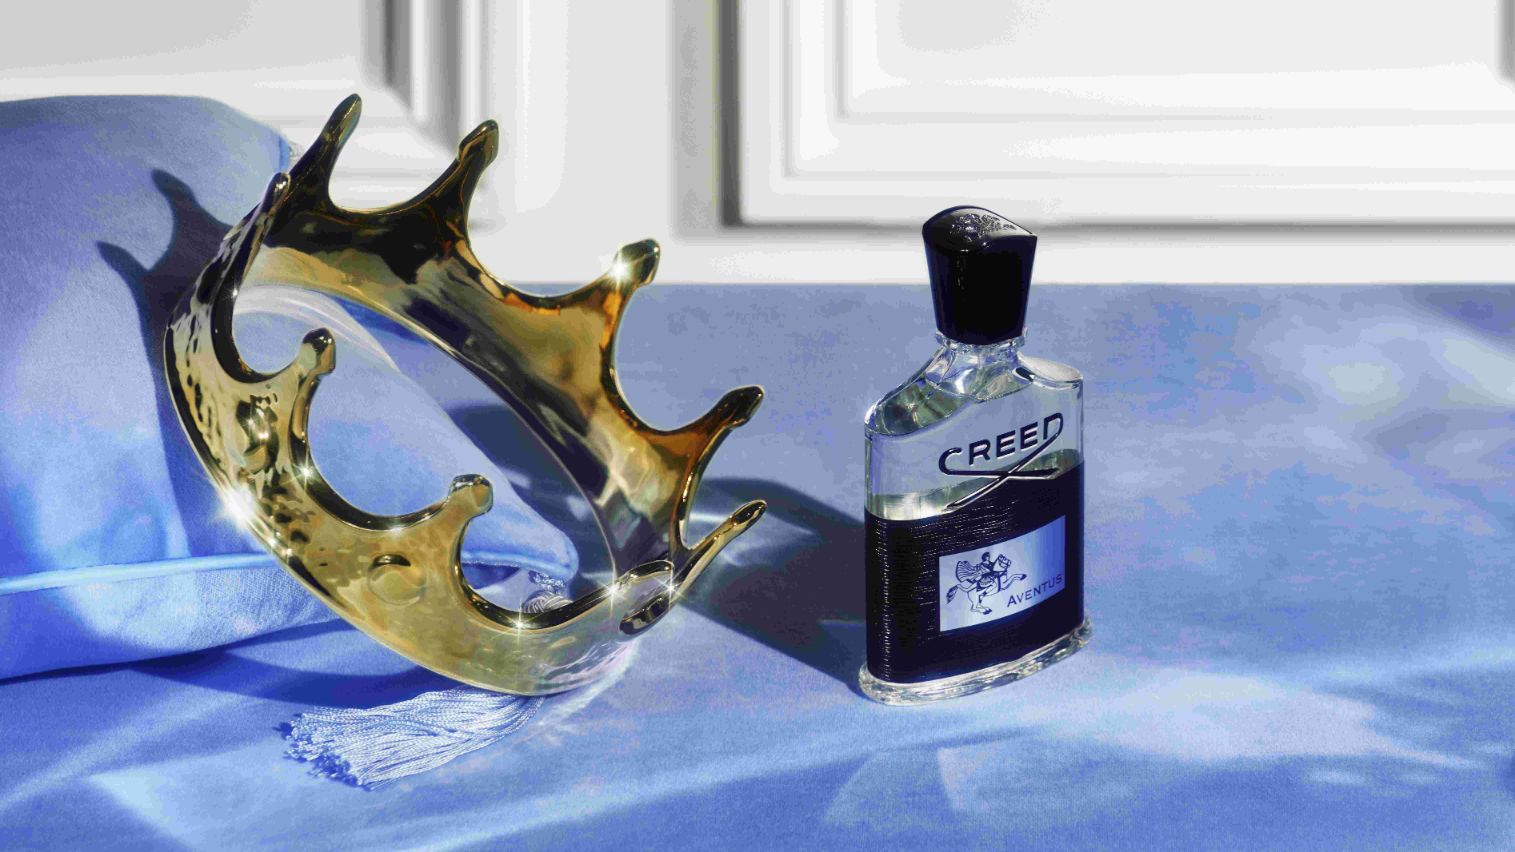 nước hoa Creed Aventus AH Perfumes nước hoa AH Perfumes 2 2 Creed Aventus   Hương thơm cổ điển dành cho người kỵ sĩ hiện đại